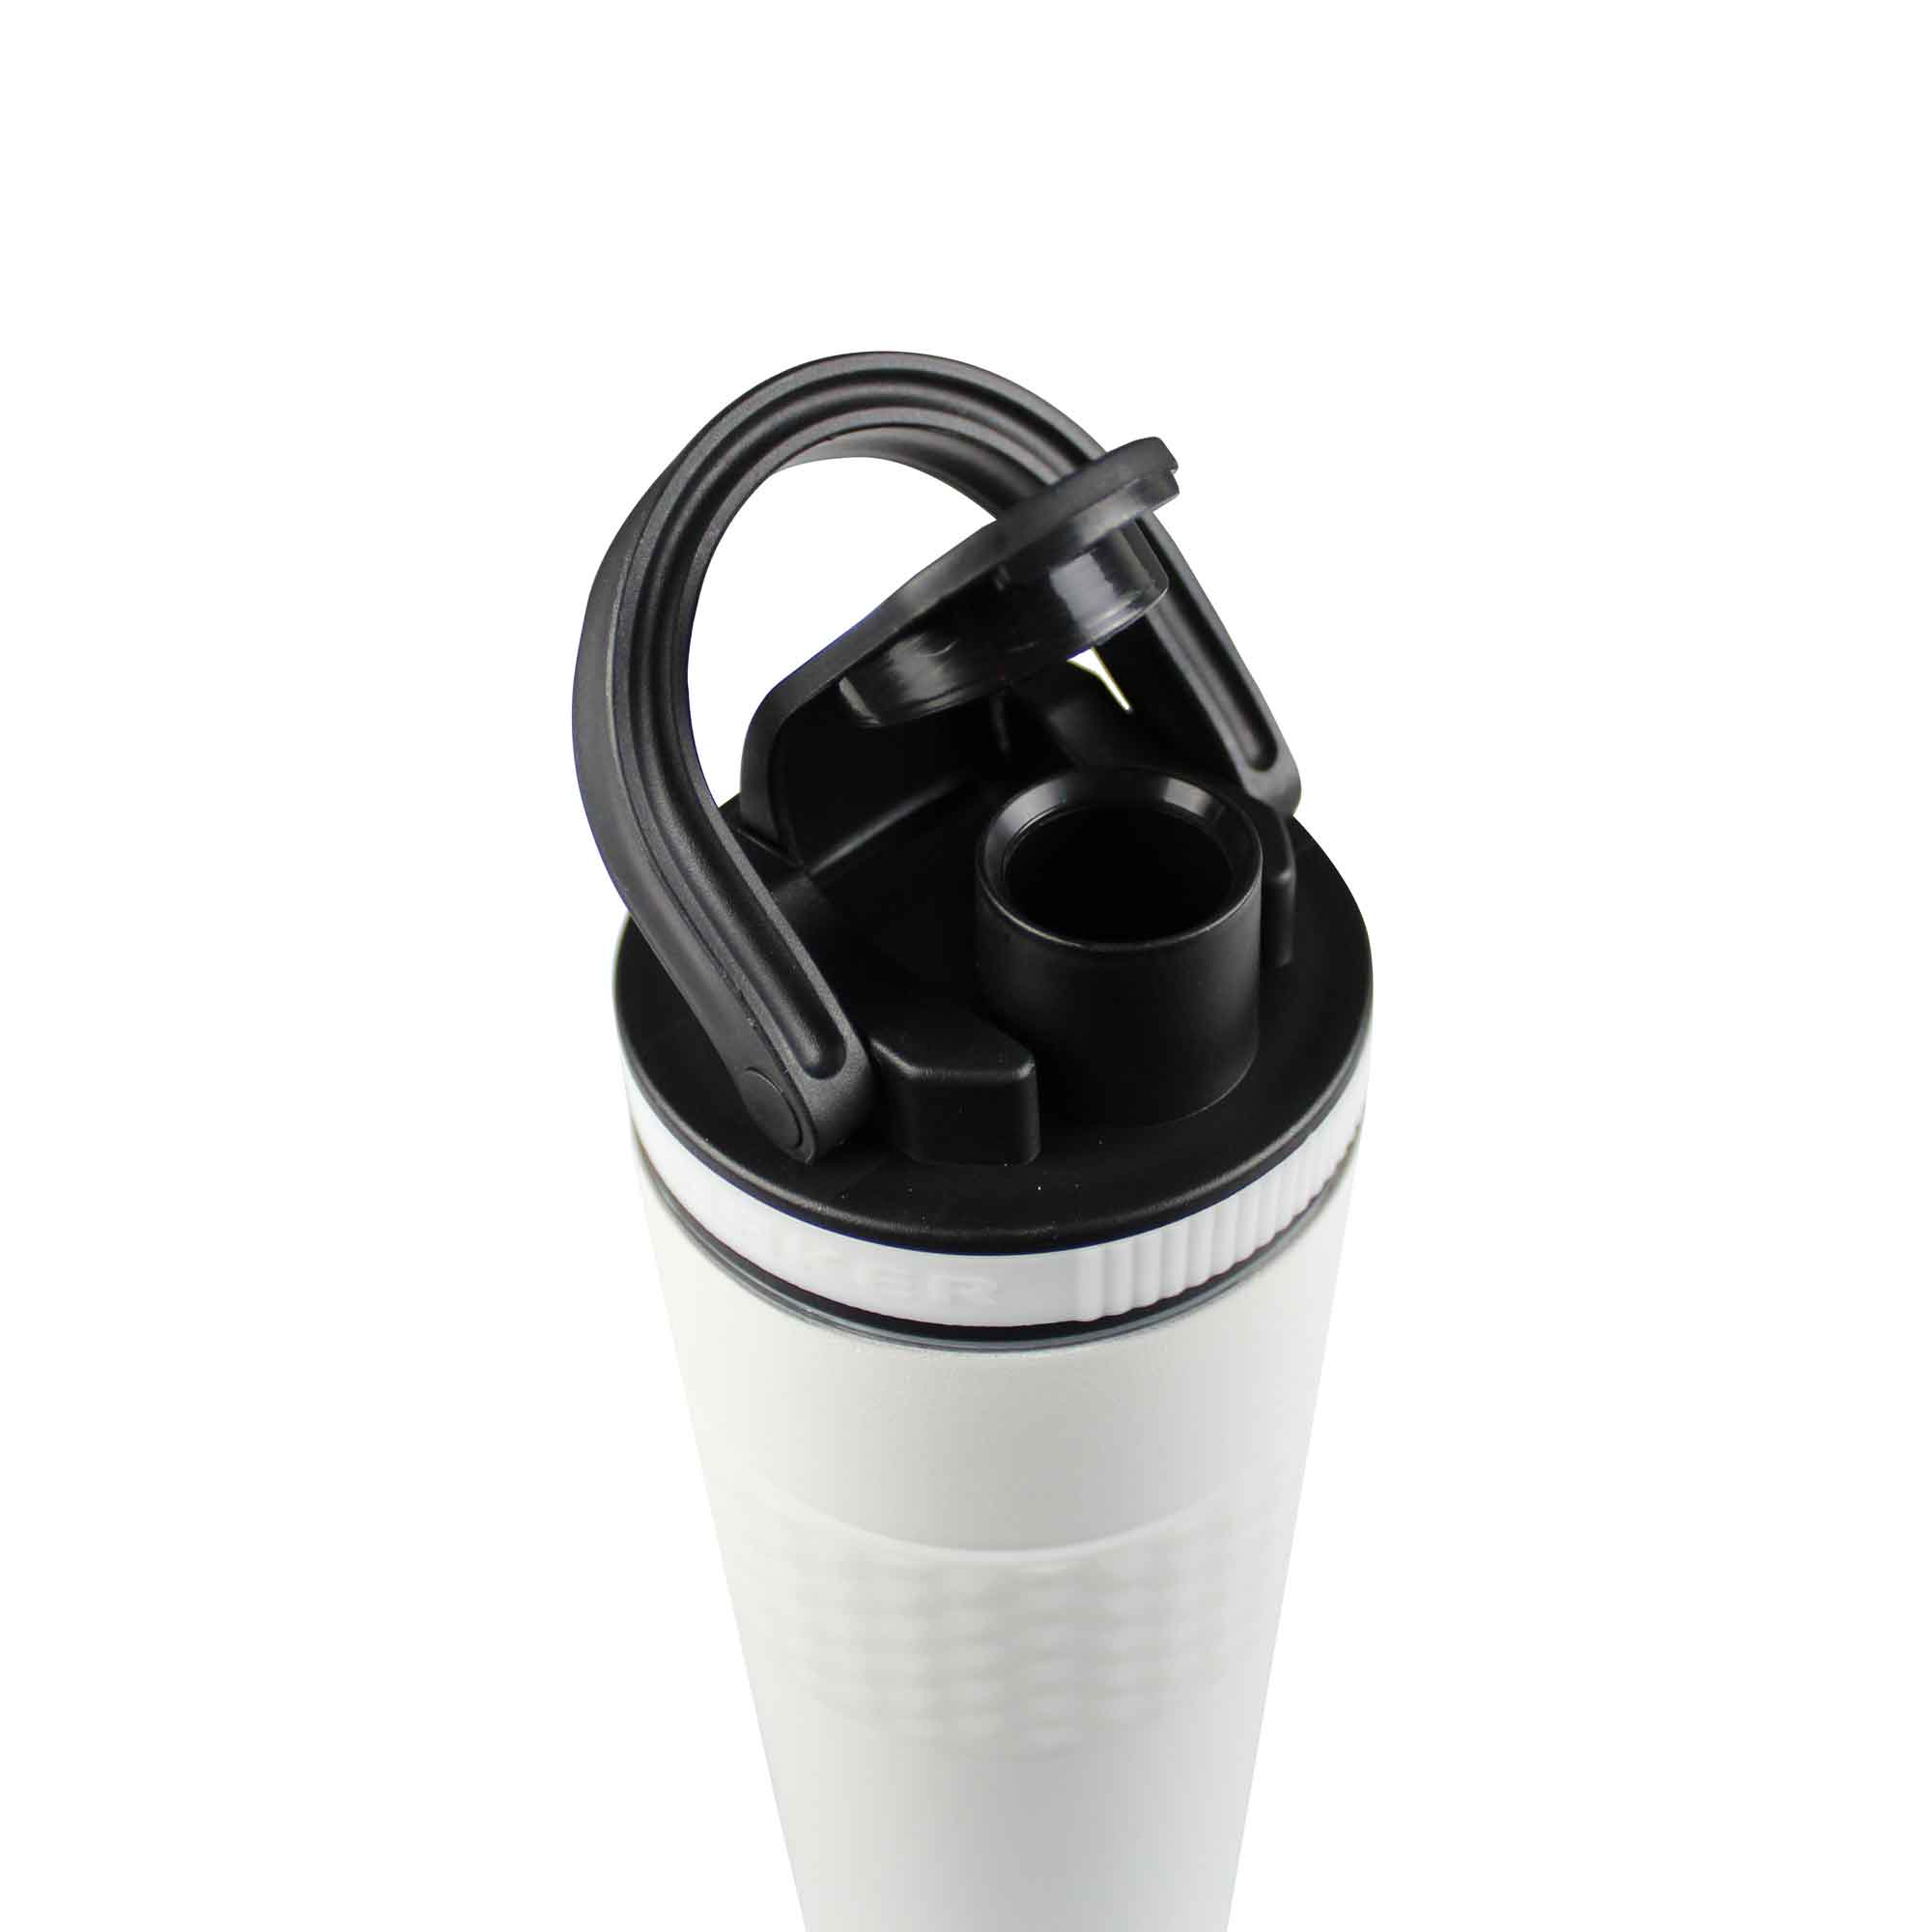 Shaker Bottle - 20oz. – JWBlitz Energy